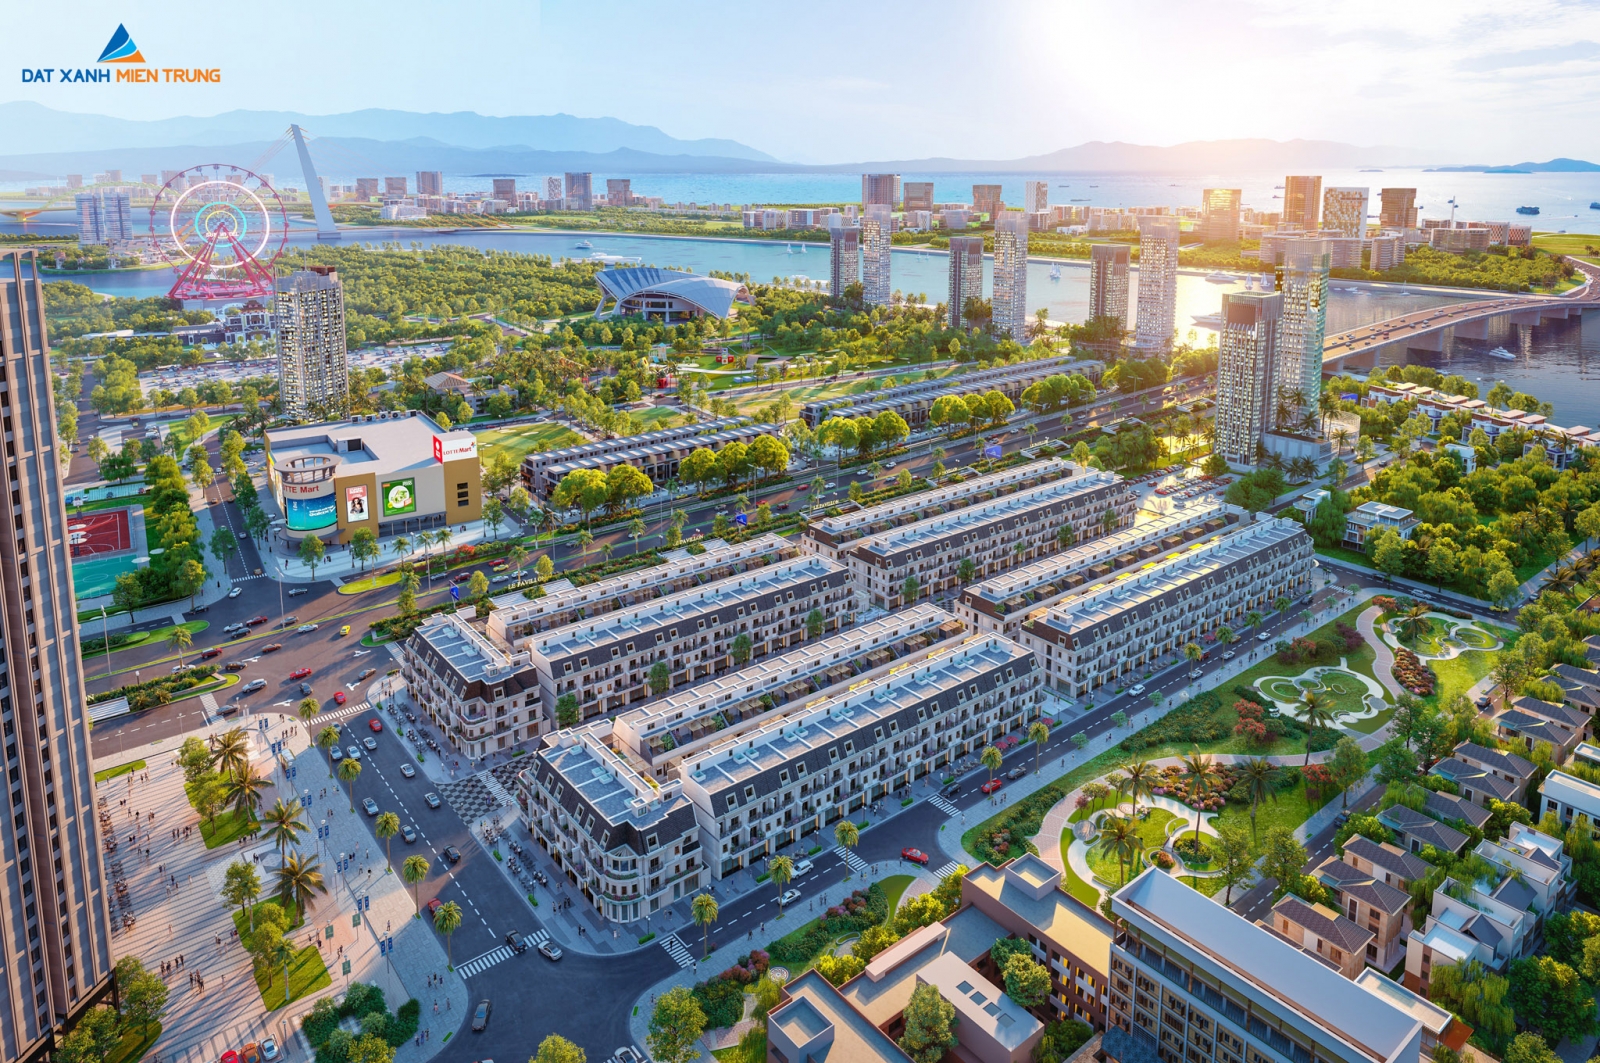 Một dự án nhà ở cao cấp sắp được xây dựng tại đường Trần Đăng Ninh - Đà Nẵng